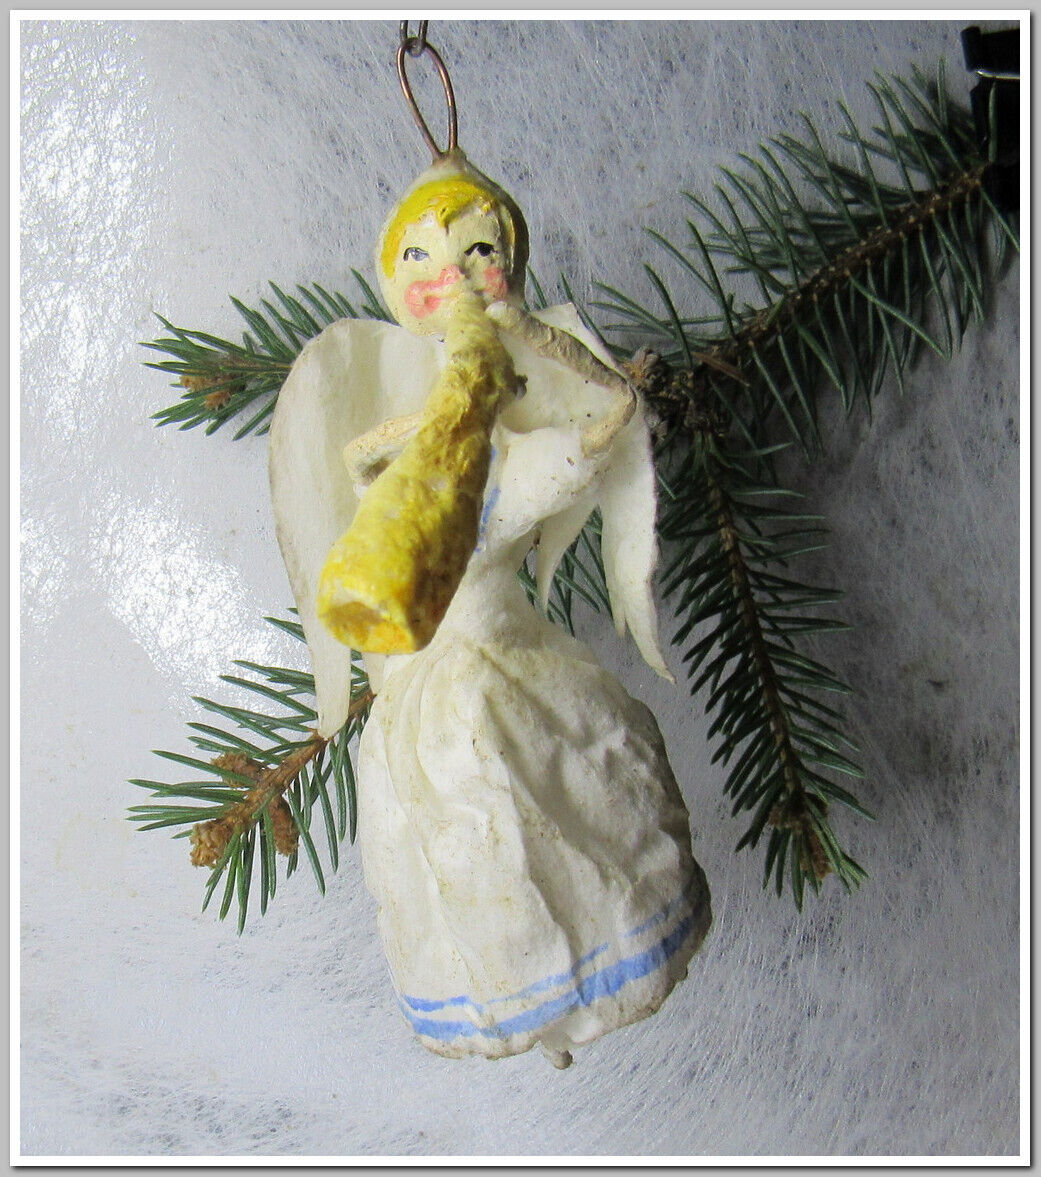 🎄Fairy-Vintage antique Christmas spun cotton ornament figure #29324